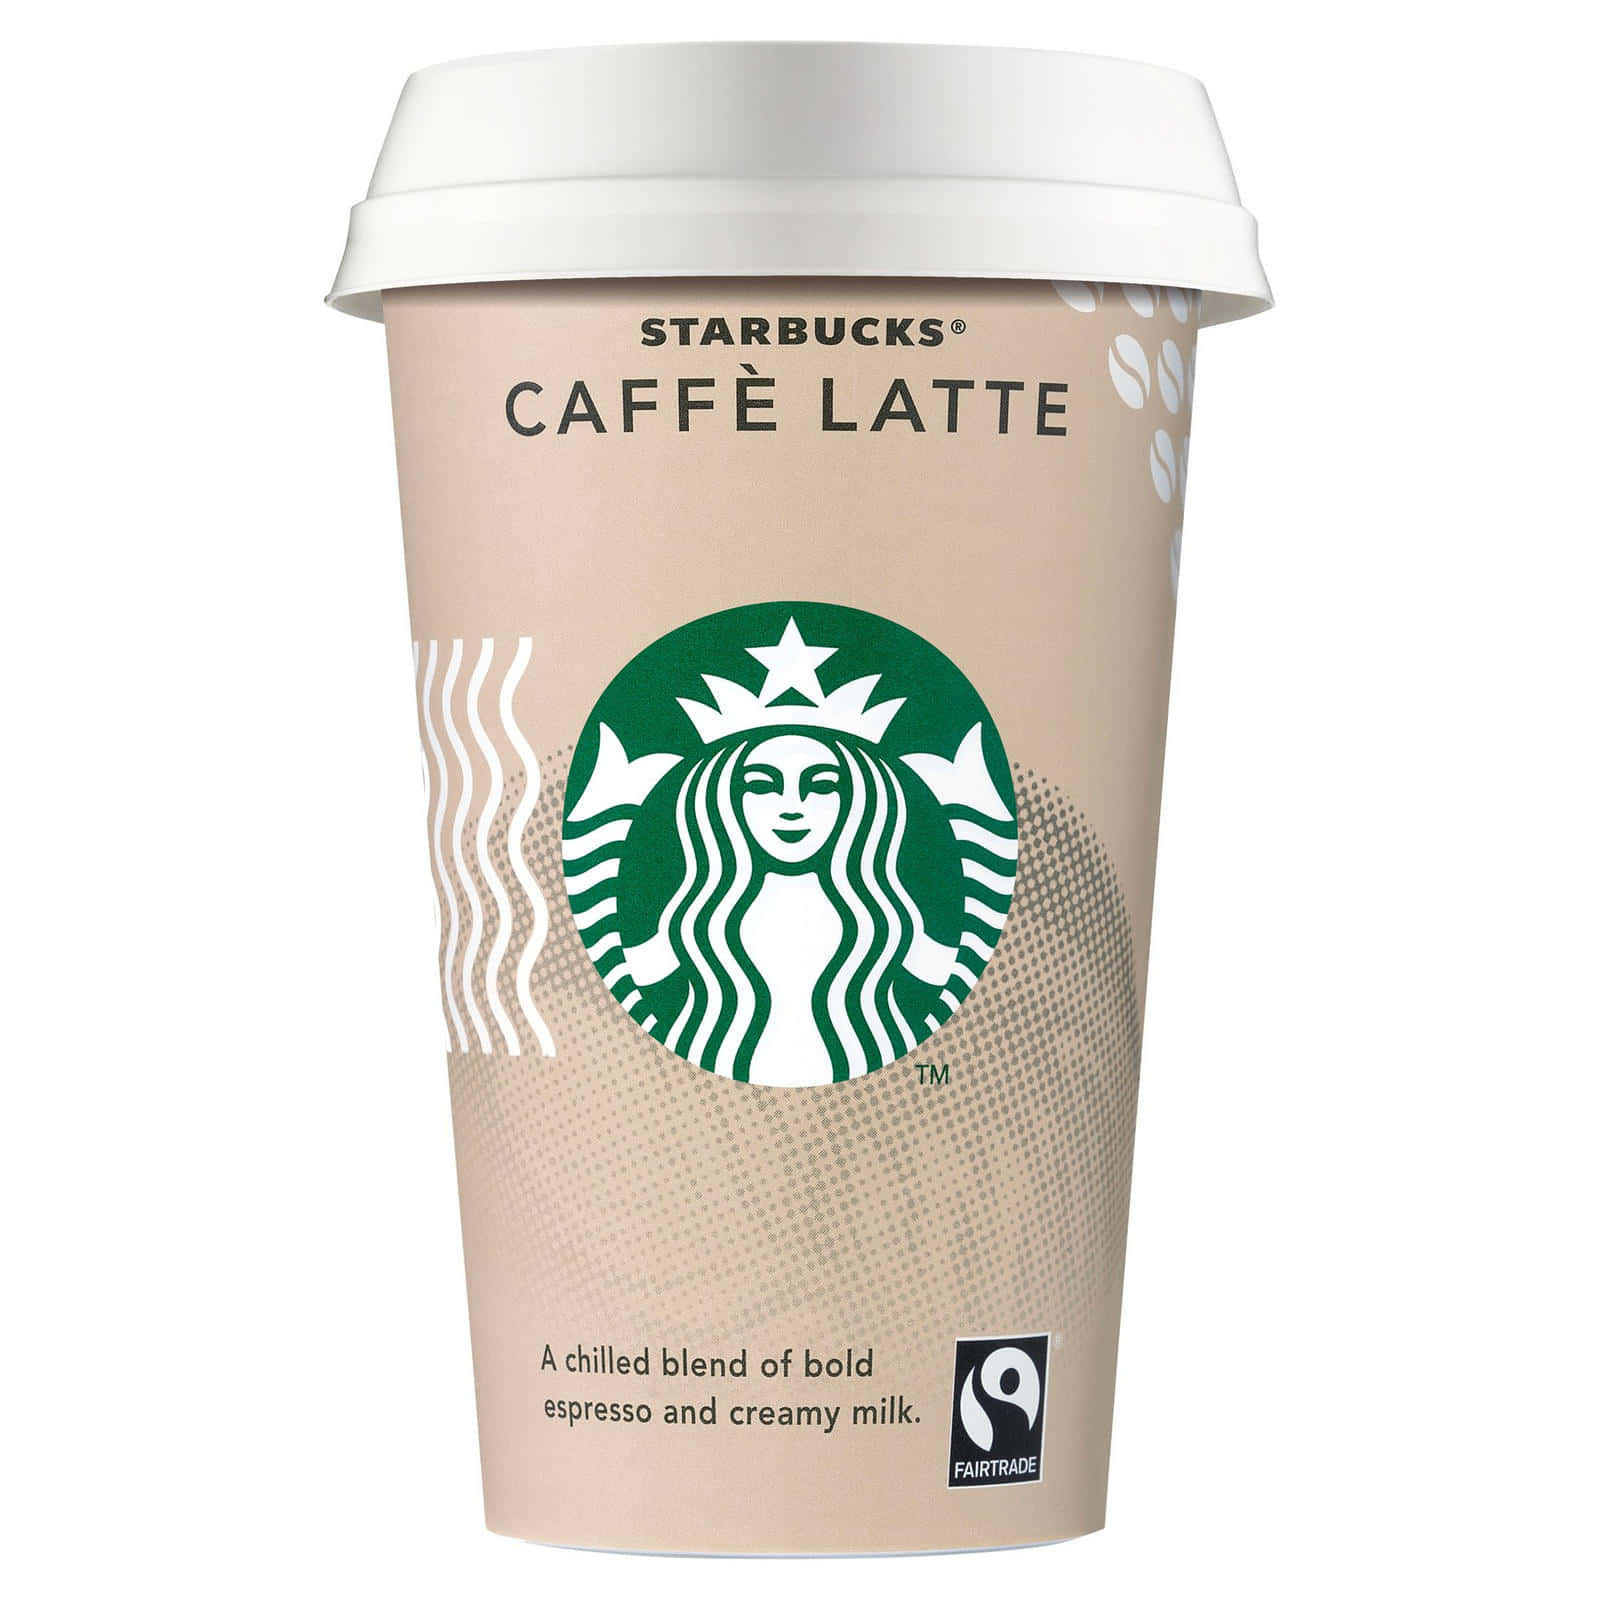 Rinfrescaticon La Tua Bevanda Preferita Di Starbucks